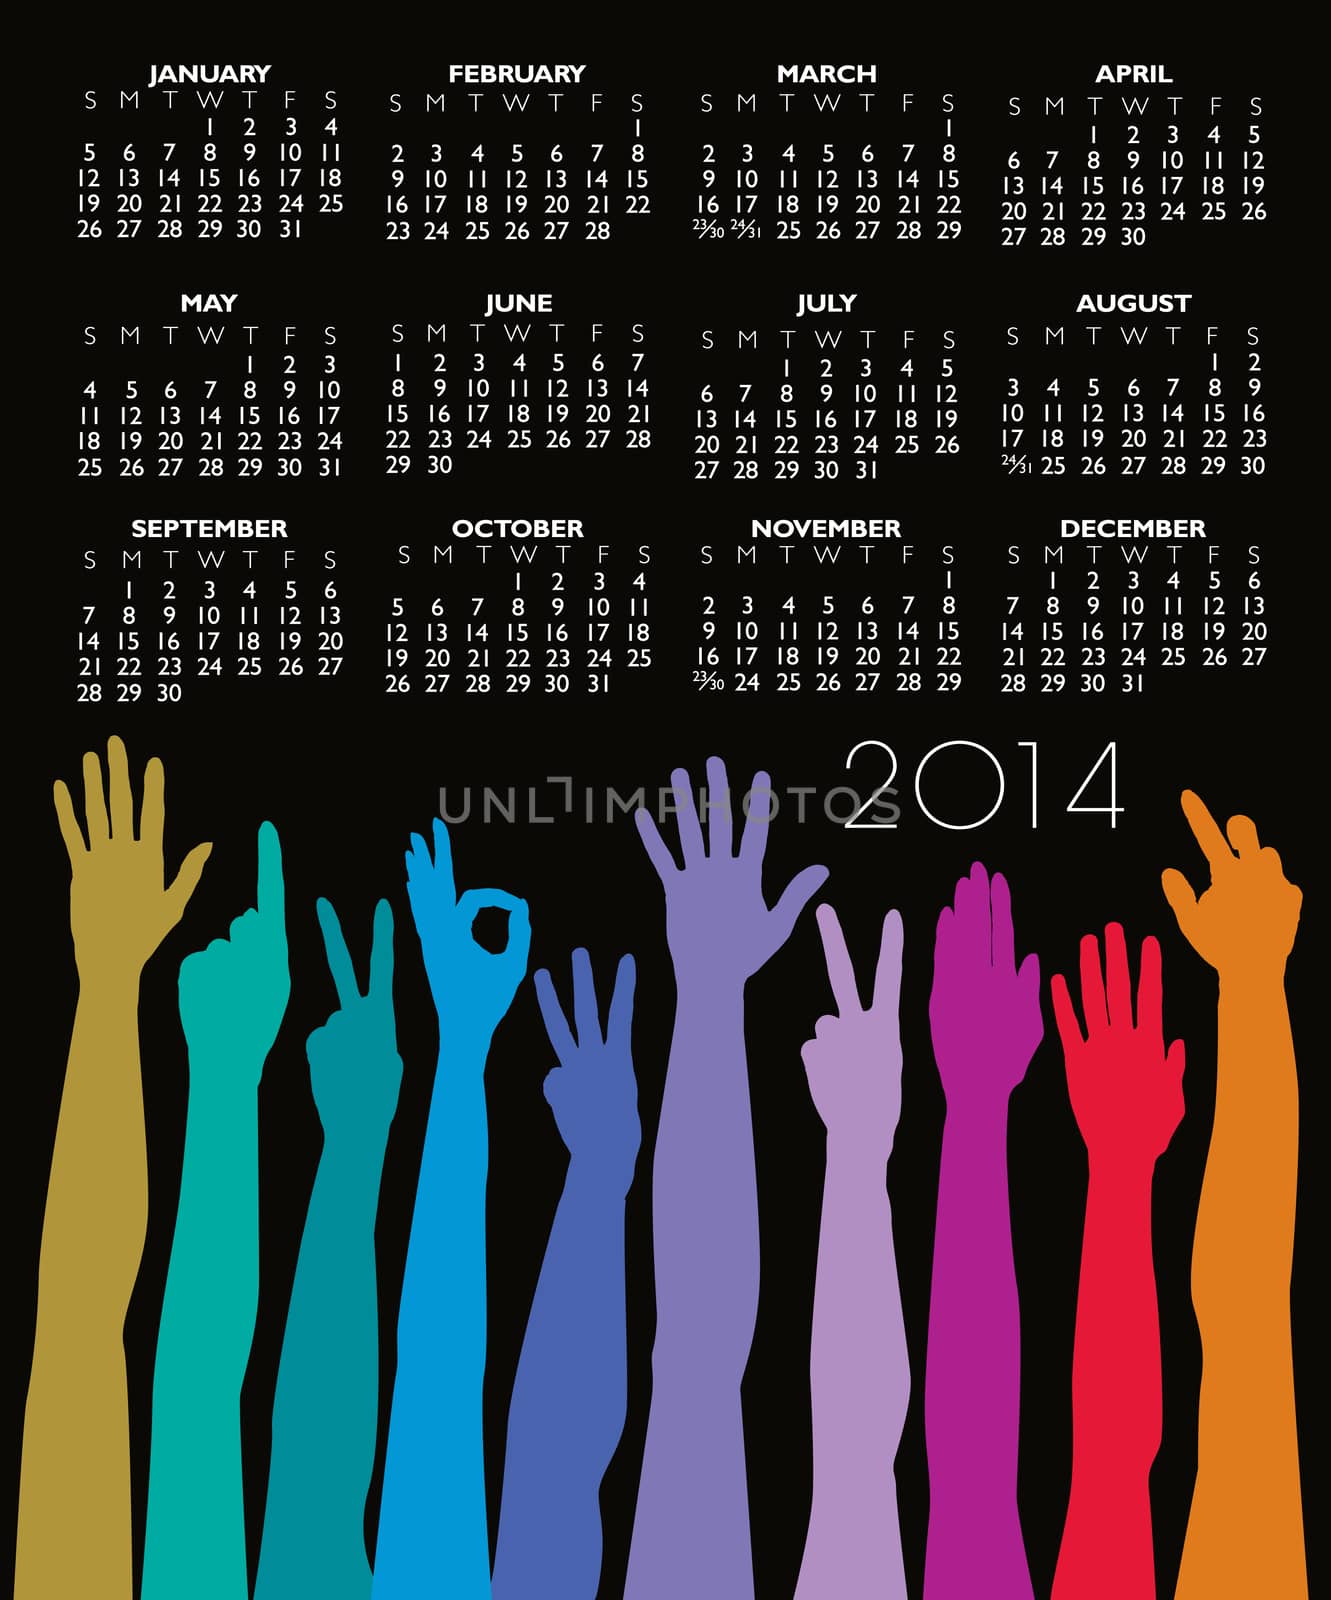 2014 Creative Hands Rainbow Calendar for Print or Website